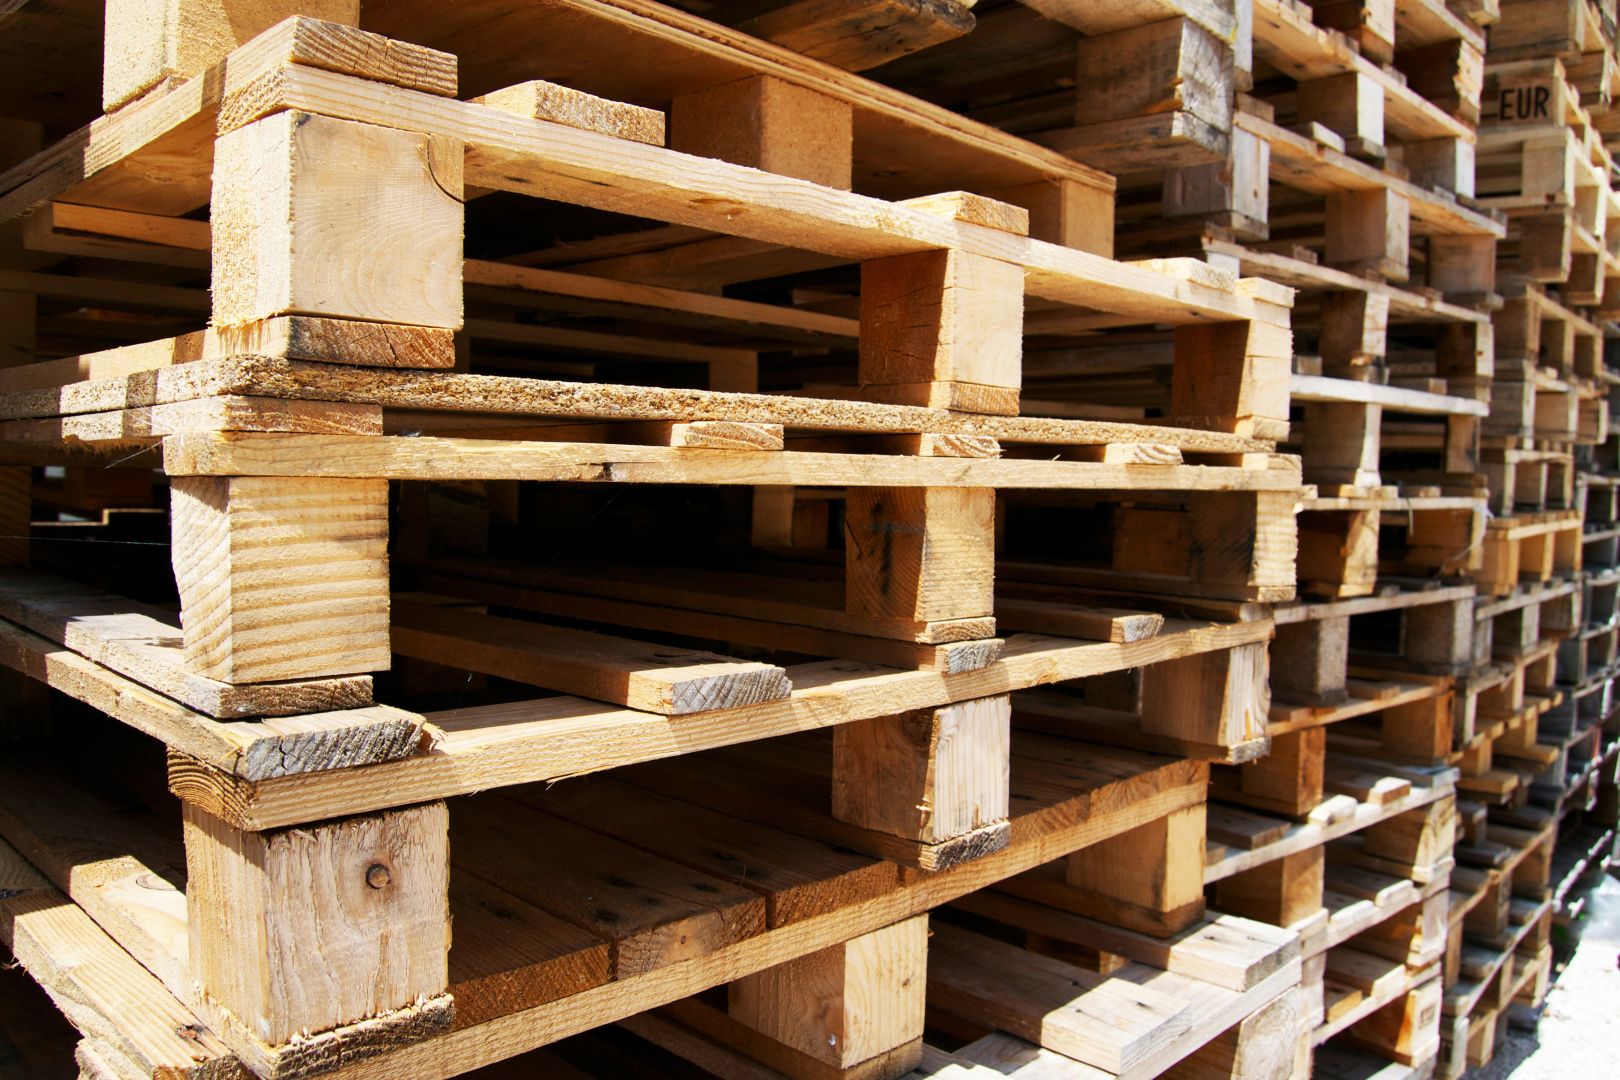 Poptávka na dodavatel, dřevěné palety na jedno použití (EURO palety) - Praha-východ